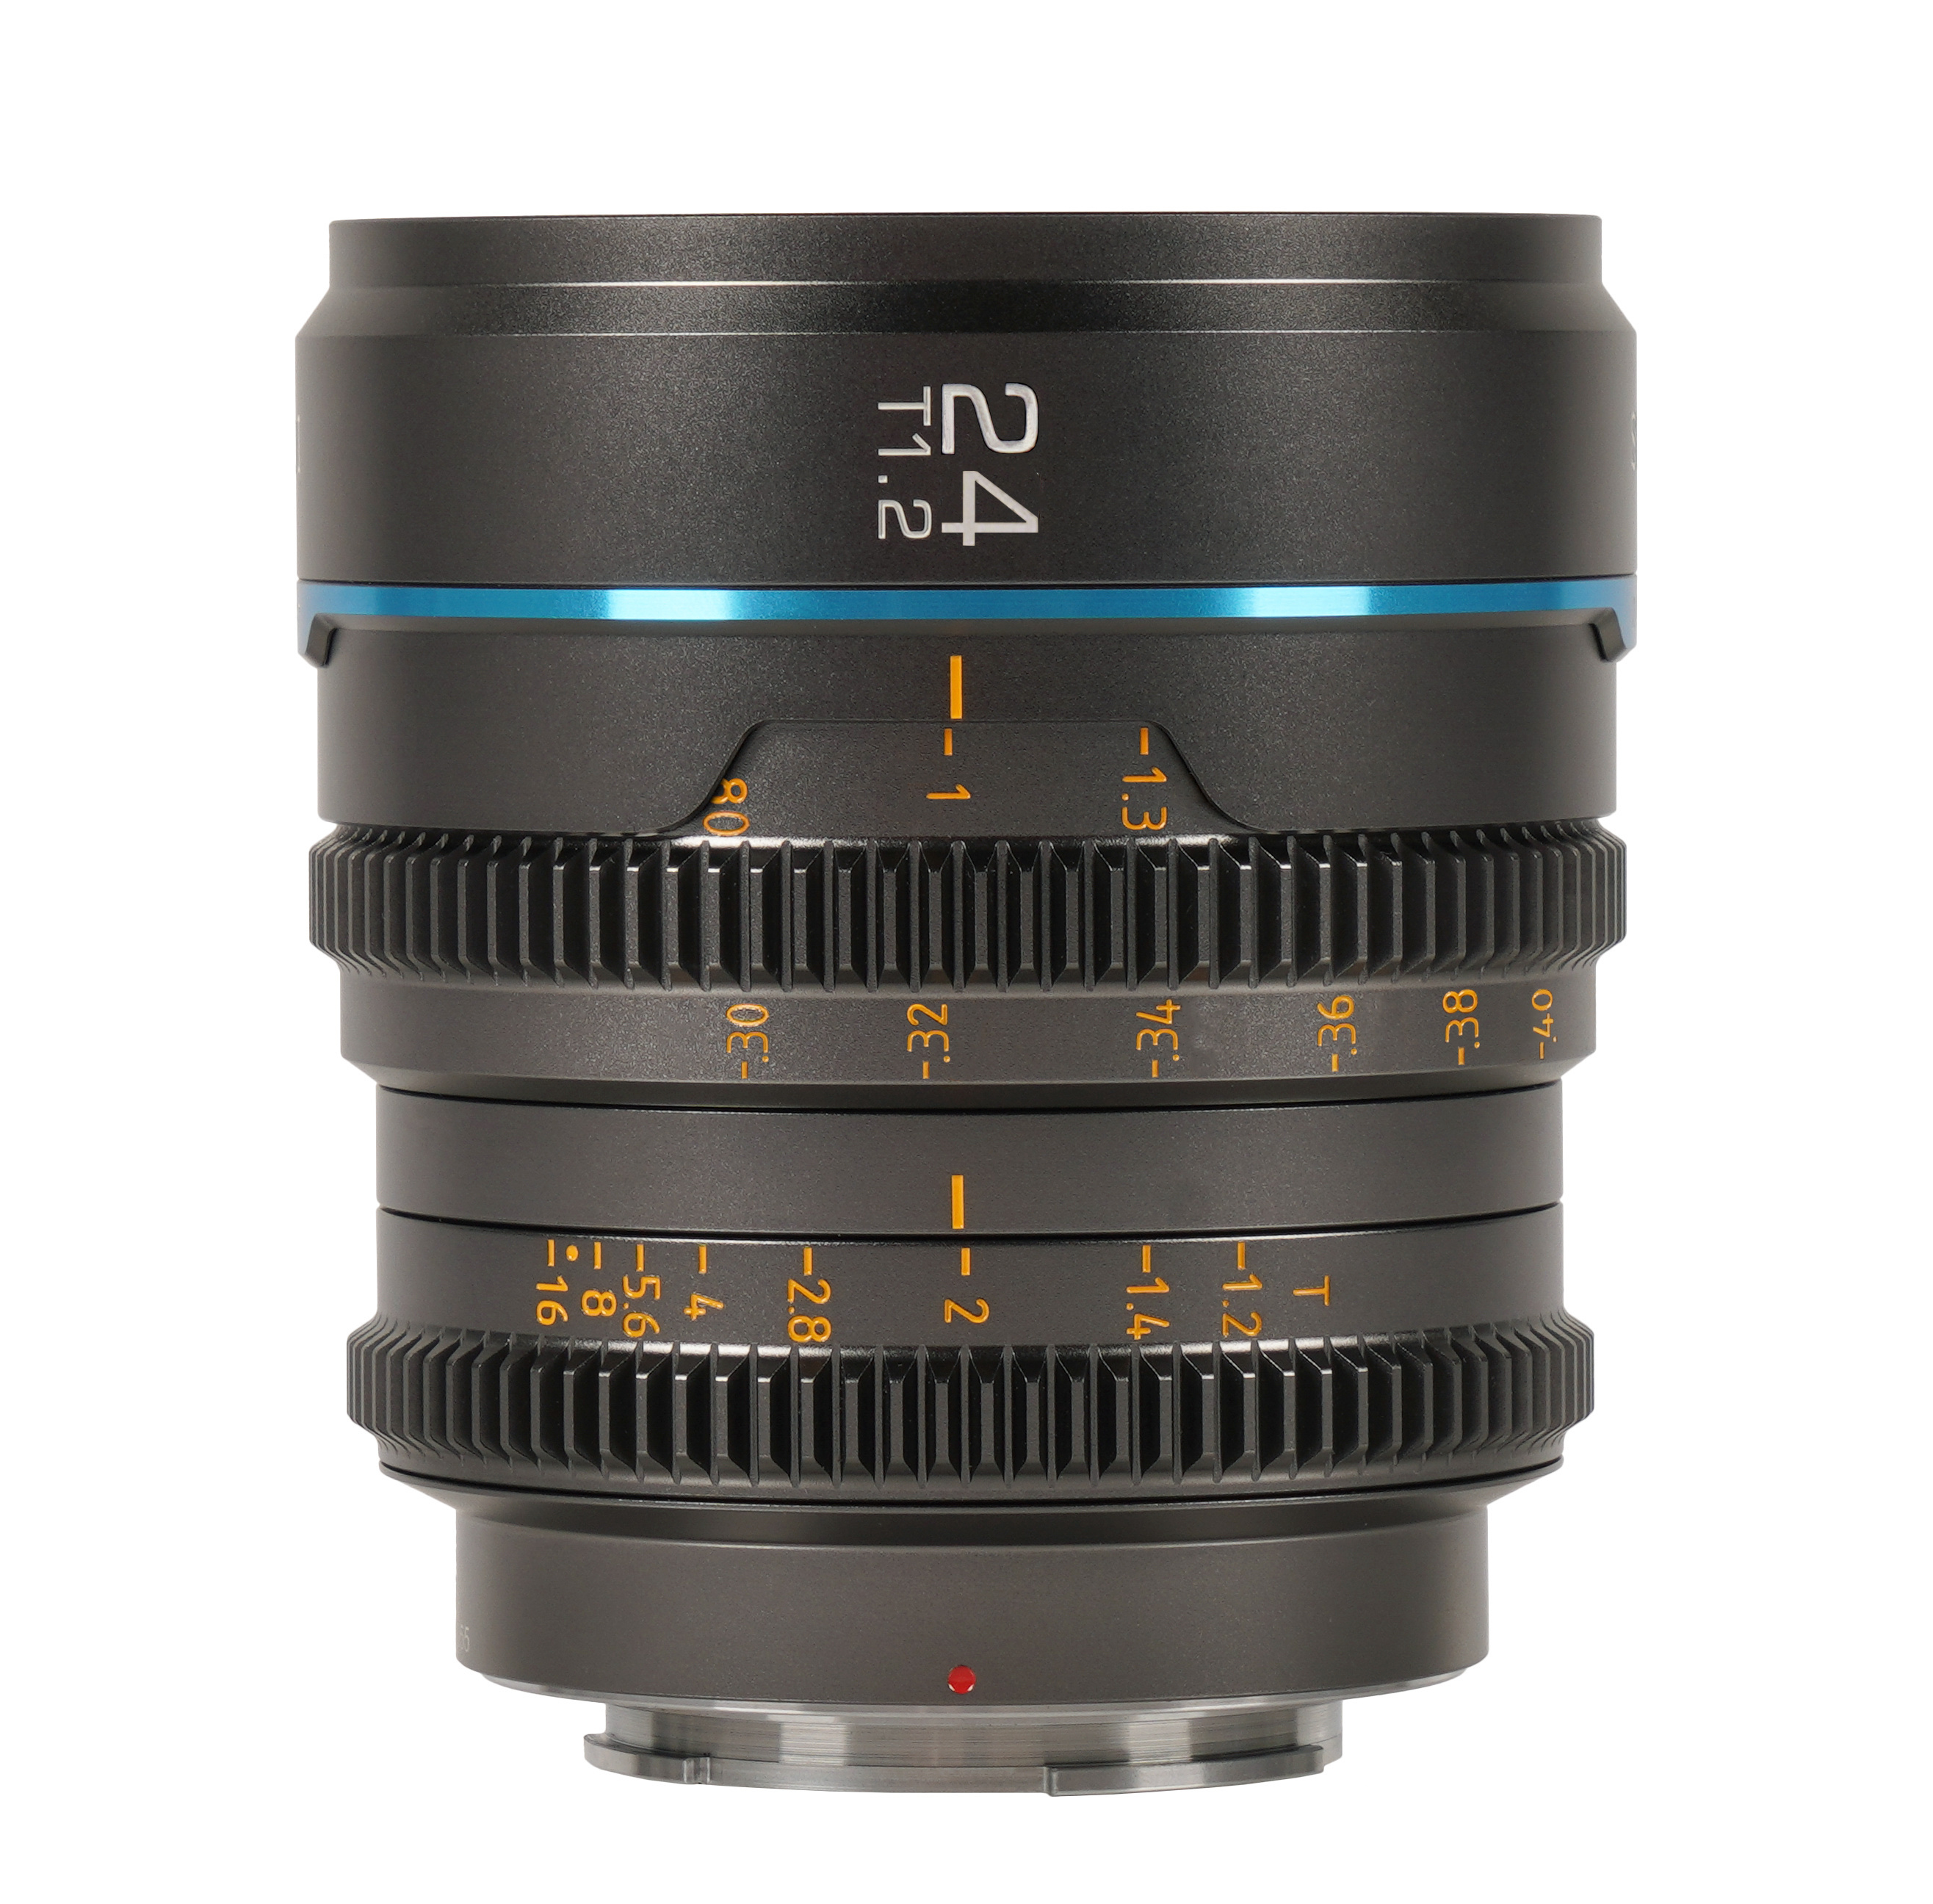 Sirui Nightwalker 24mm T1.2 S35 Cine Lens (RF Mount, Gun Metal Grey)